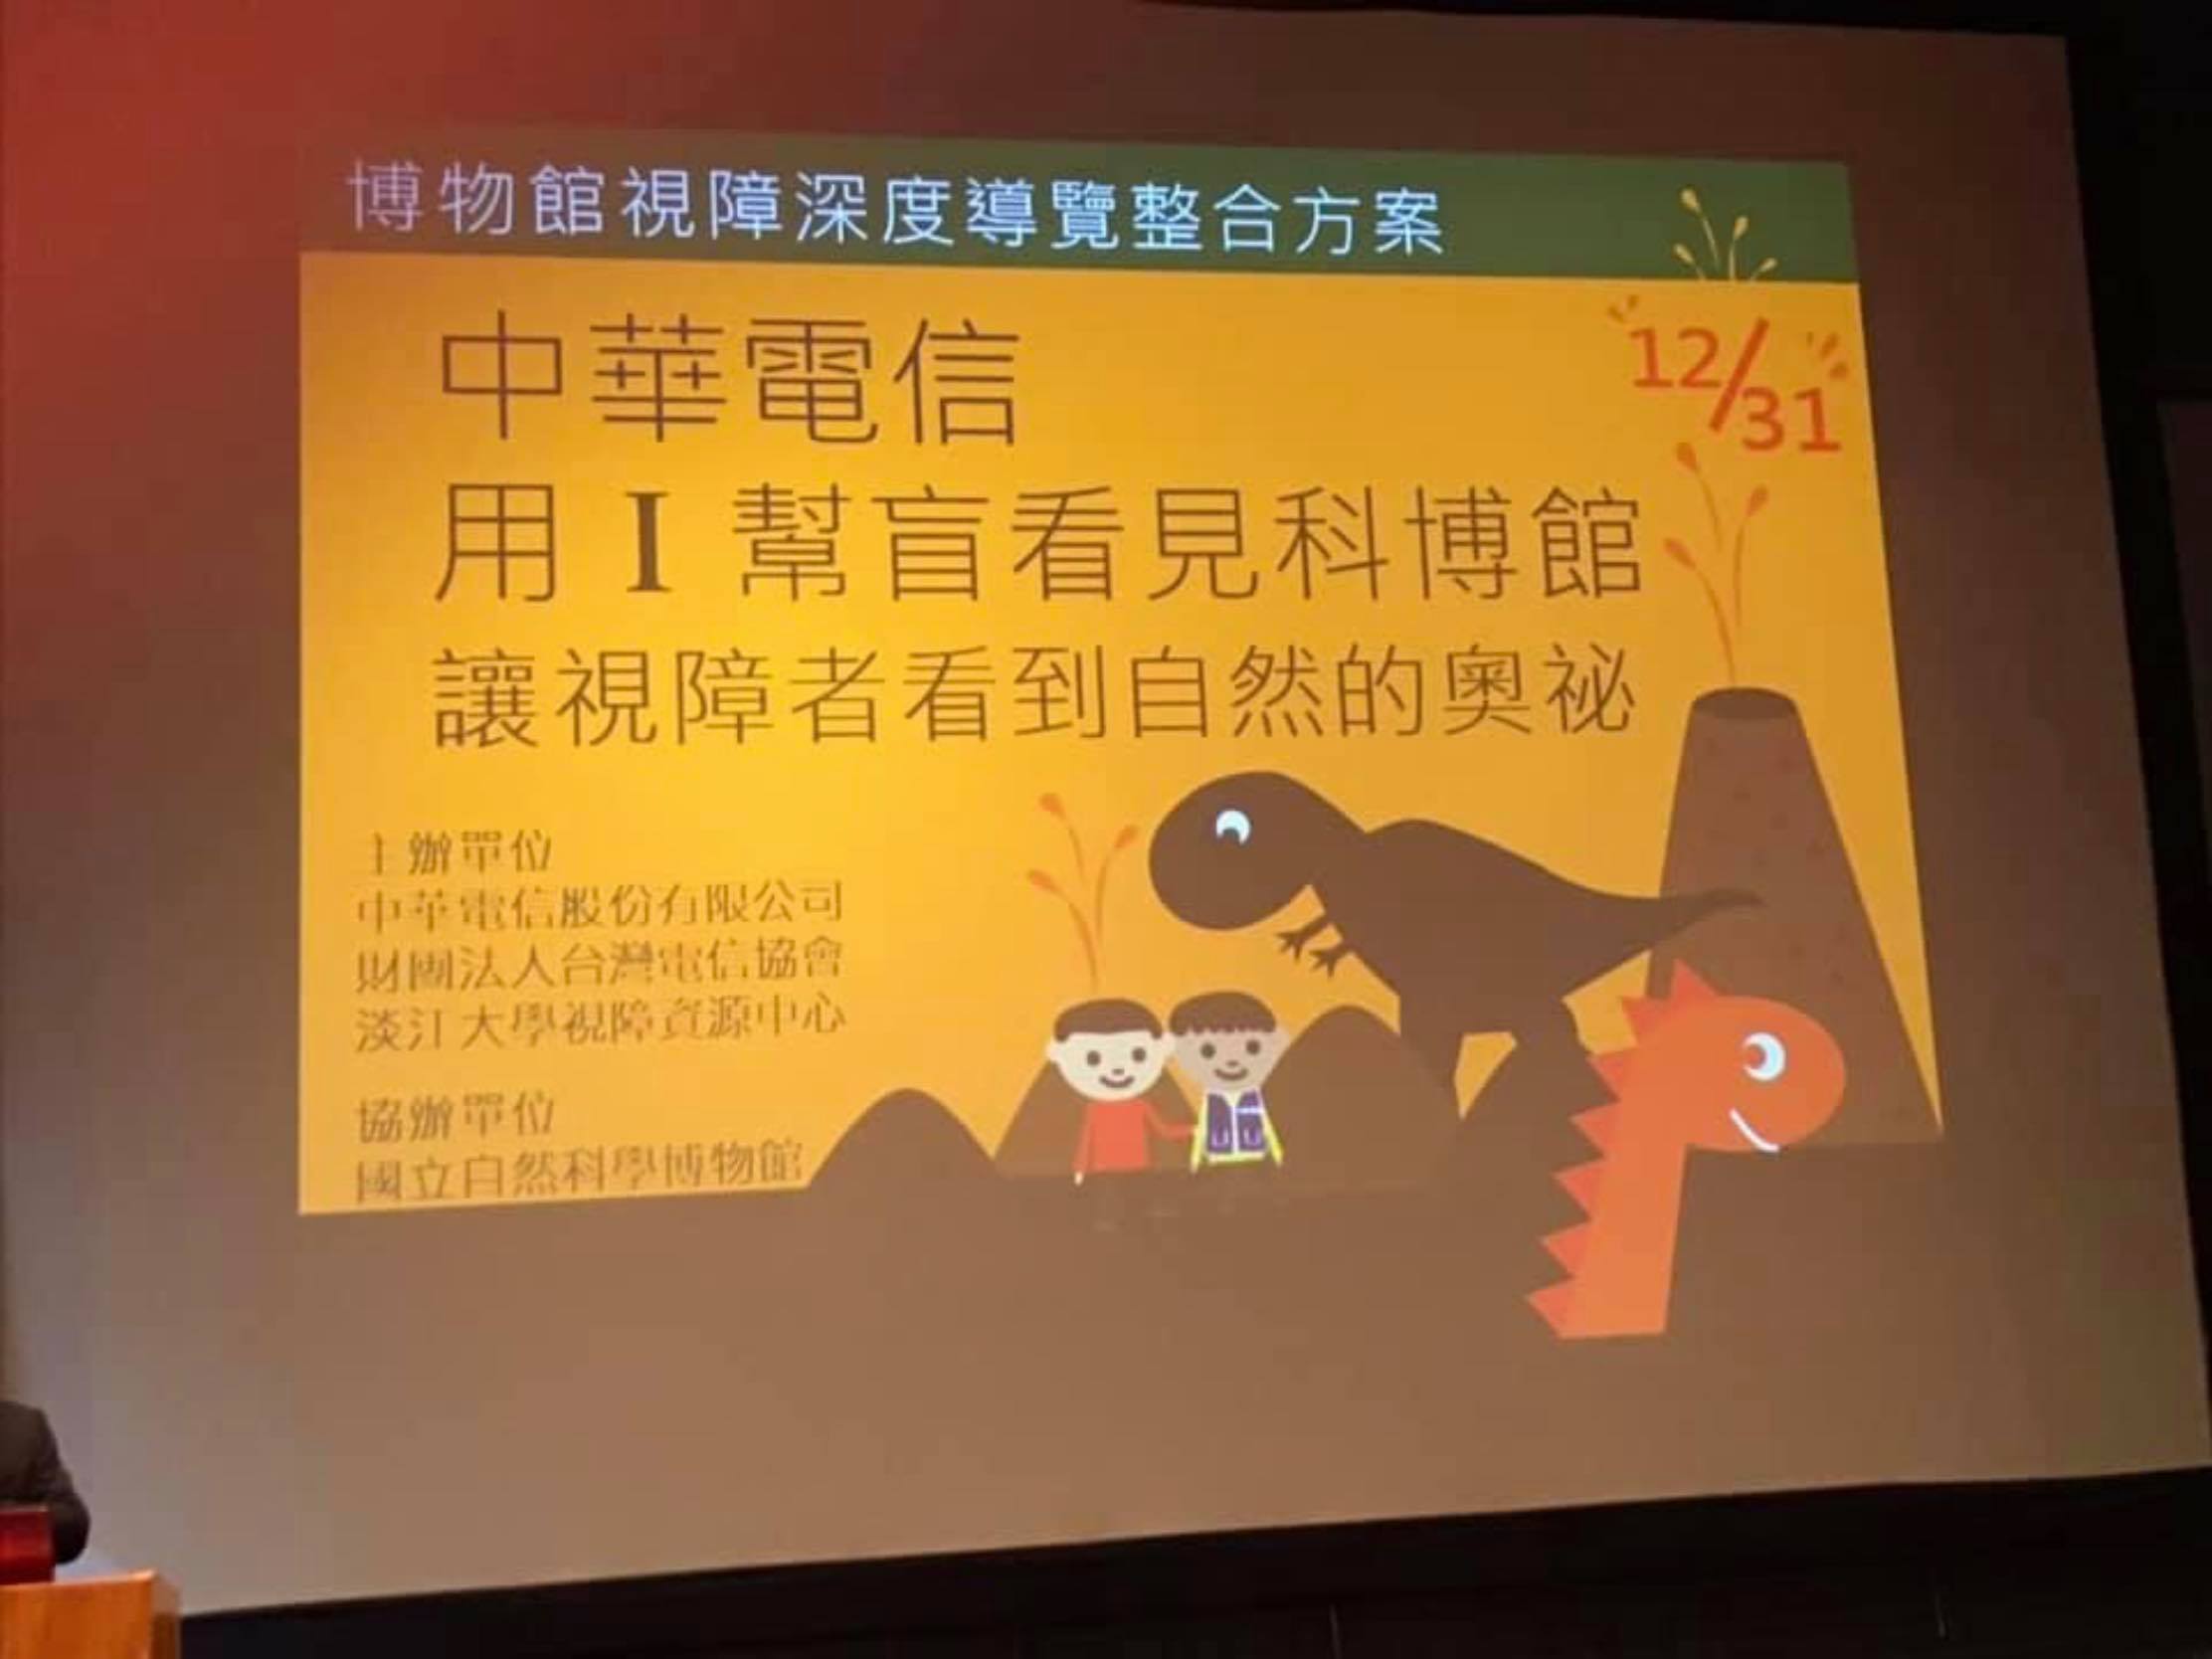 作者參加中華電信「I幫盲讓視障朋友看見海科館」活動。